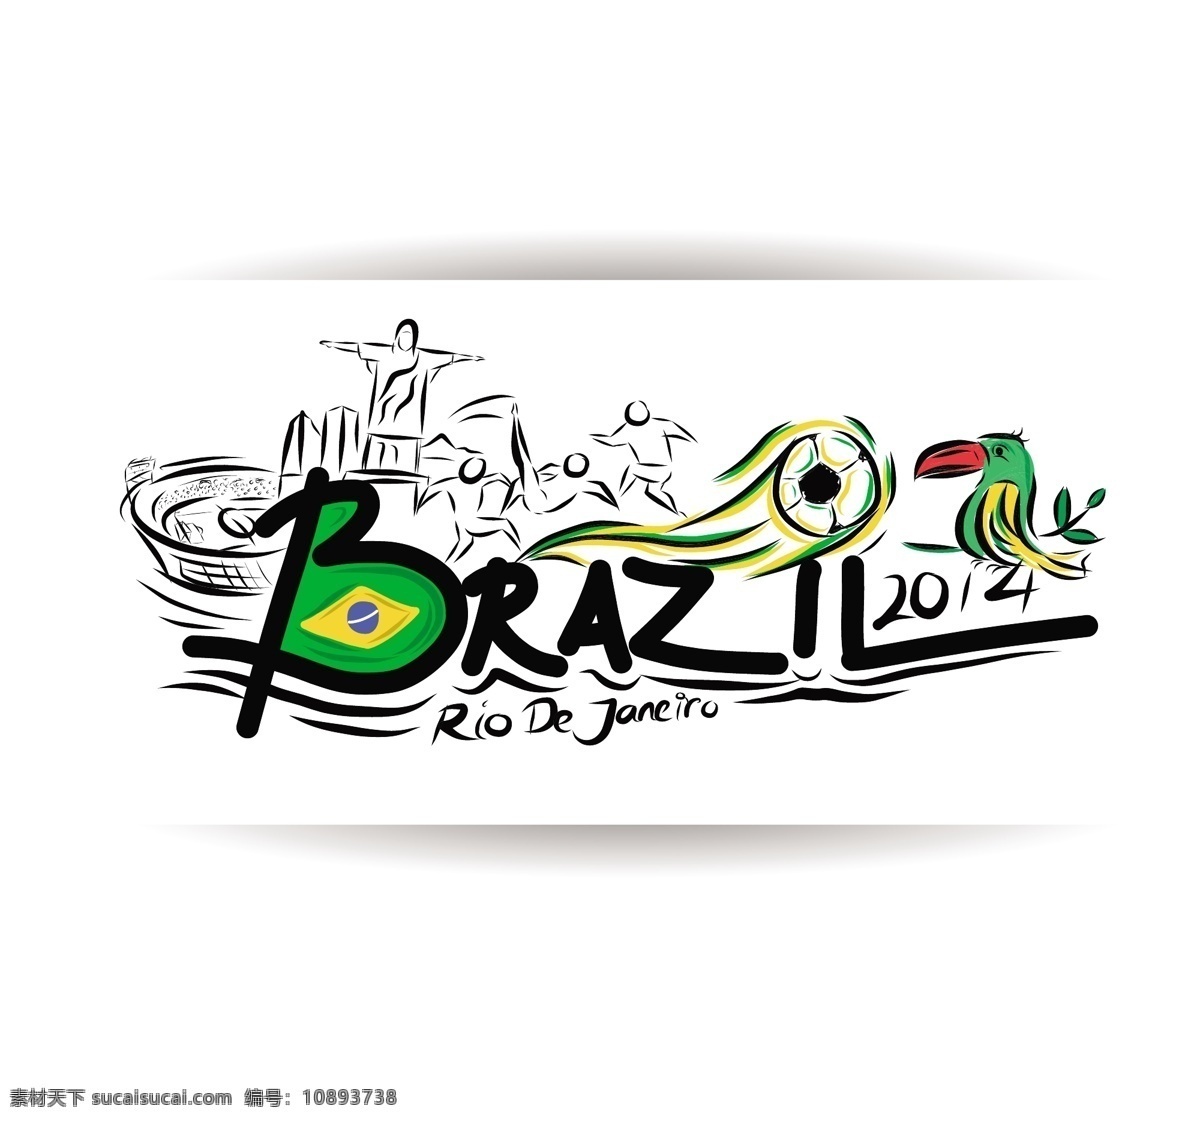 巴西 世界杯 标志 模板下载 卡通鹦鹉 基督像 卡通鸟 巴西国旗 足球 足球比赛 球赛 体育运动 生活百科 矢量素材 白色